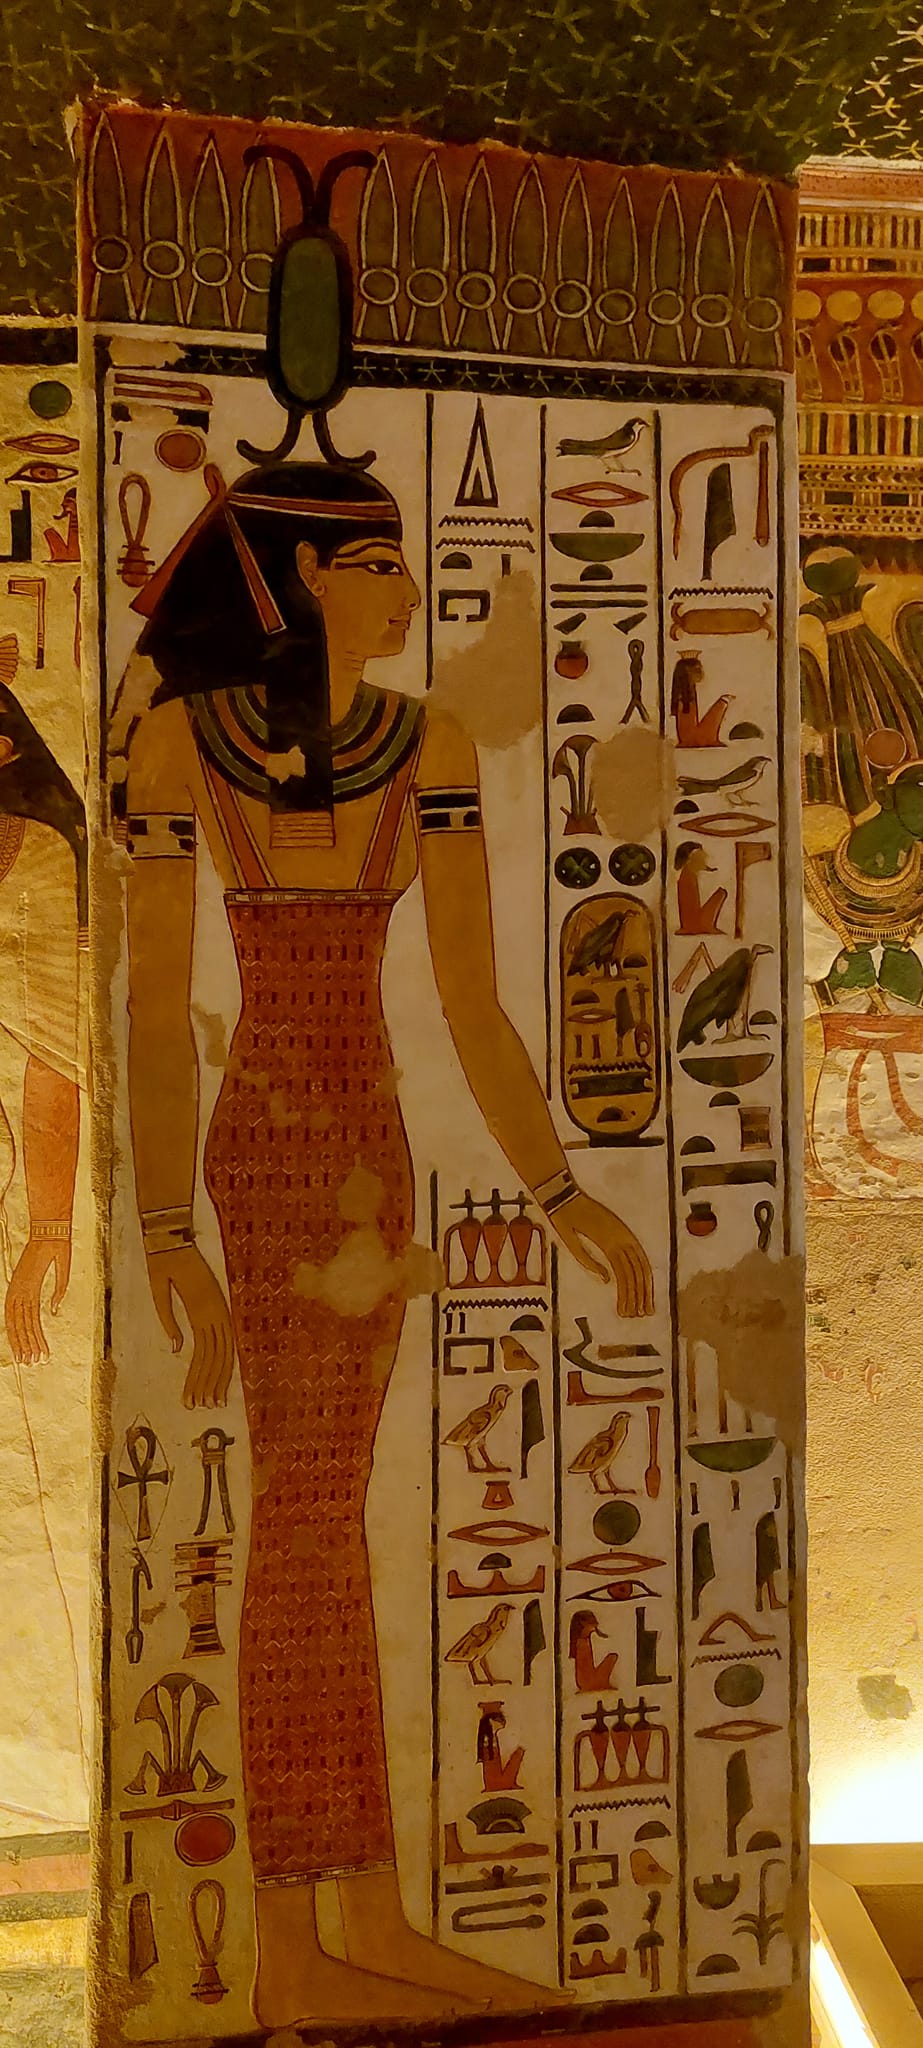 نقوش ورسومات فرعونية منذ آلاف السنين بالمقابر